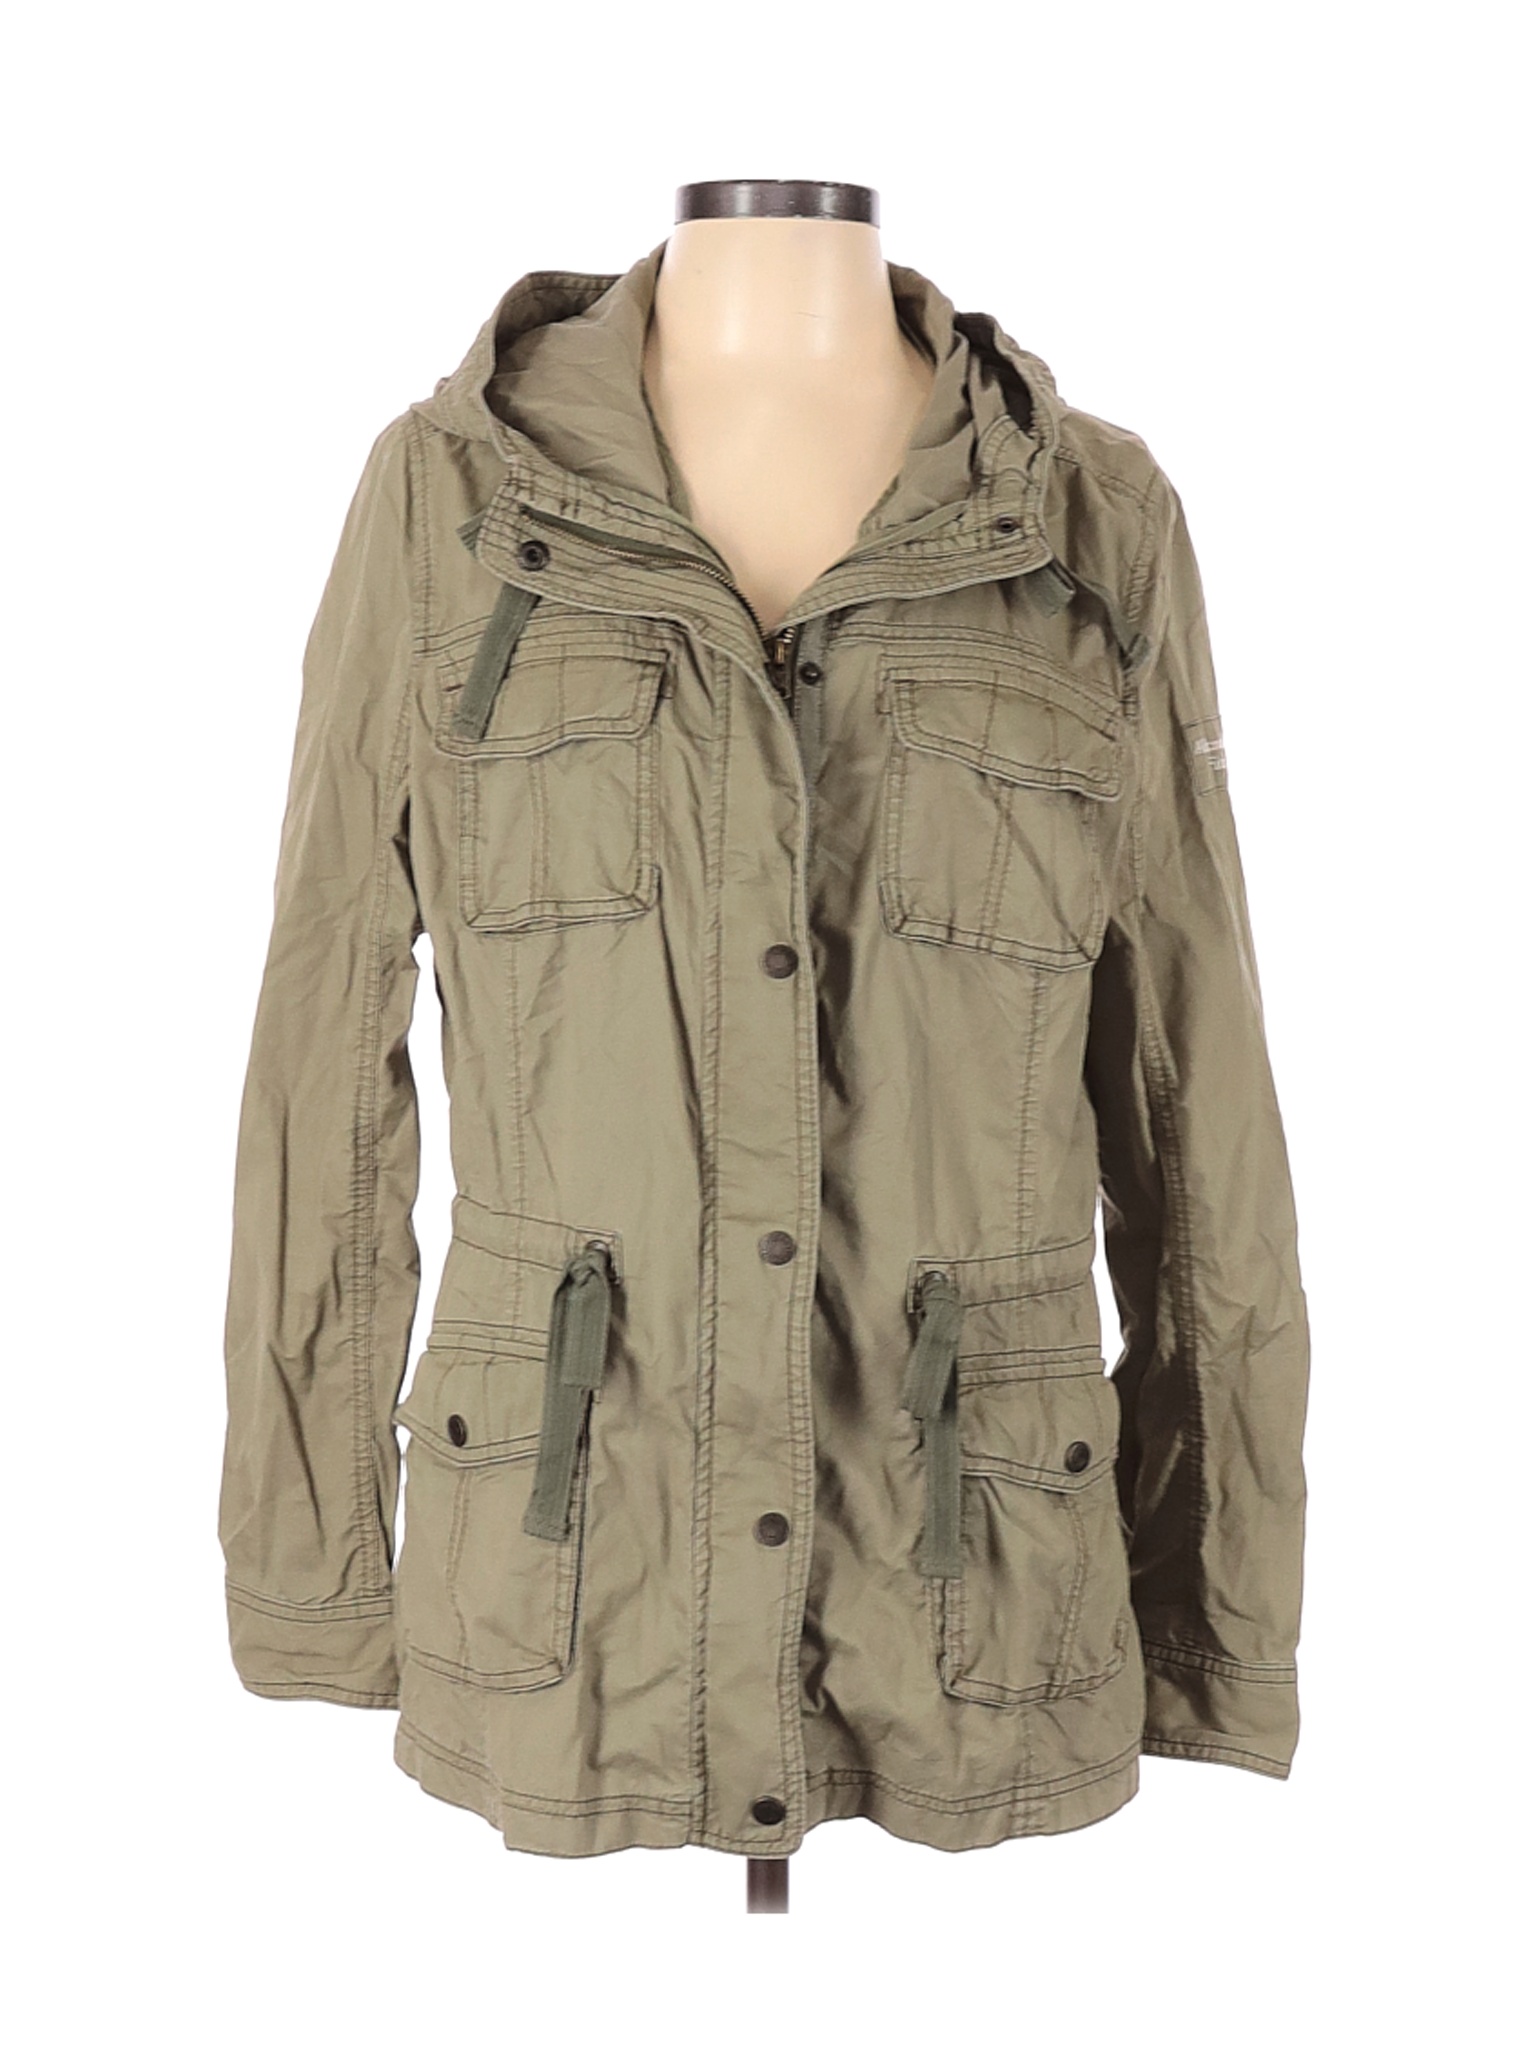 Abercrombie & Fitch Women Green Jacket L | eBay